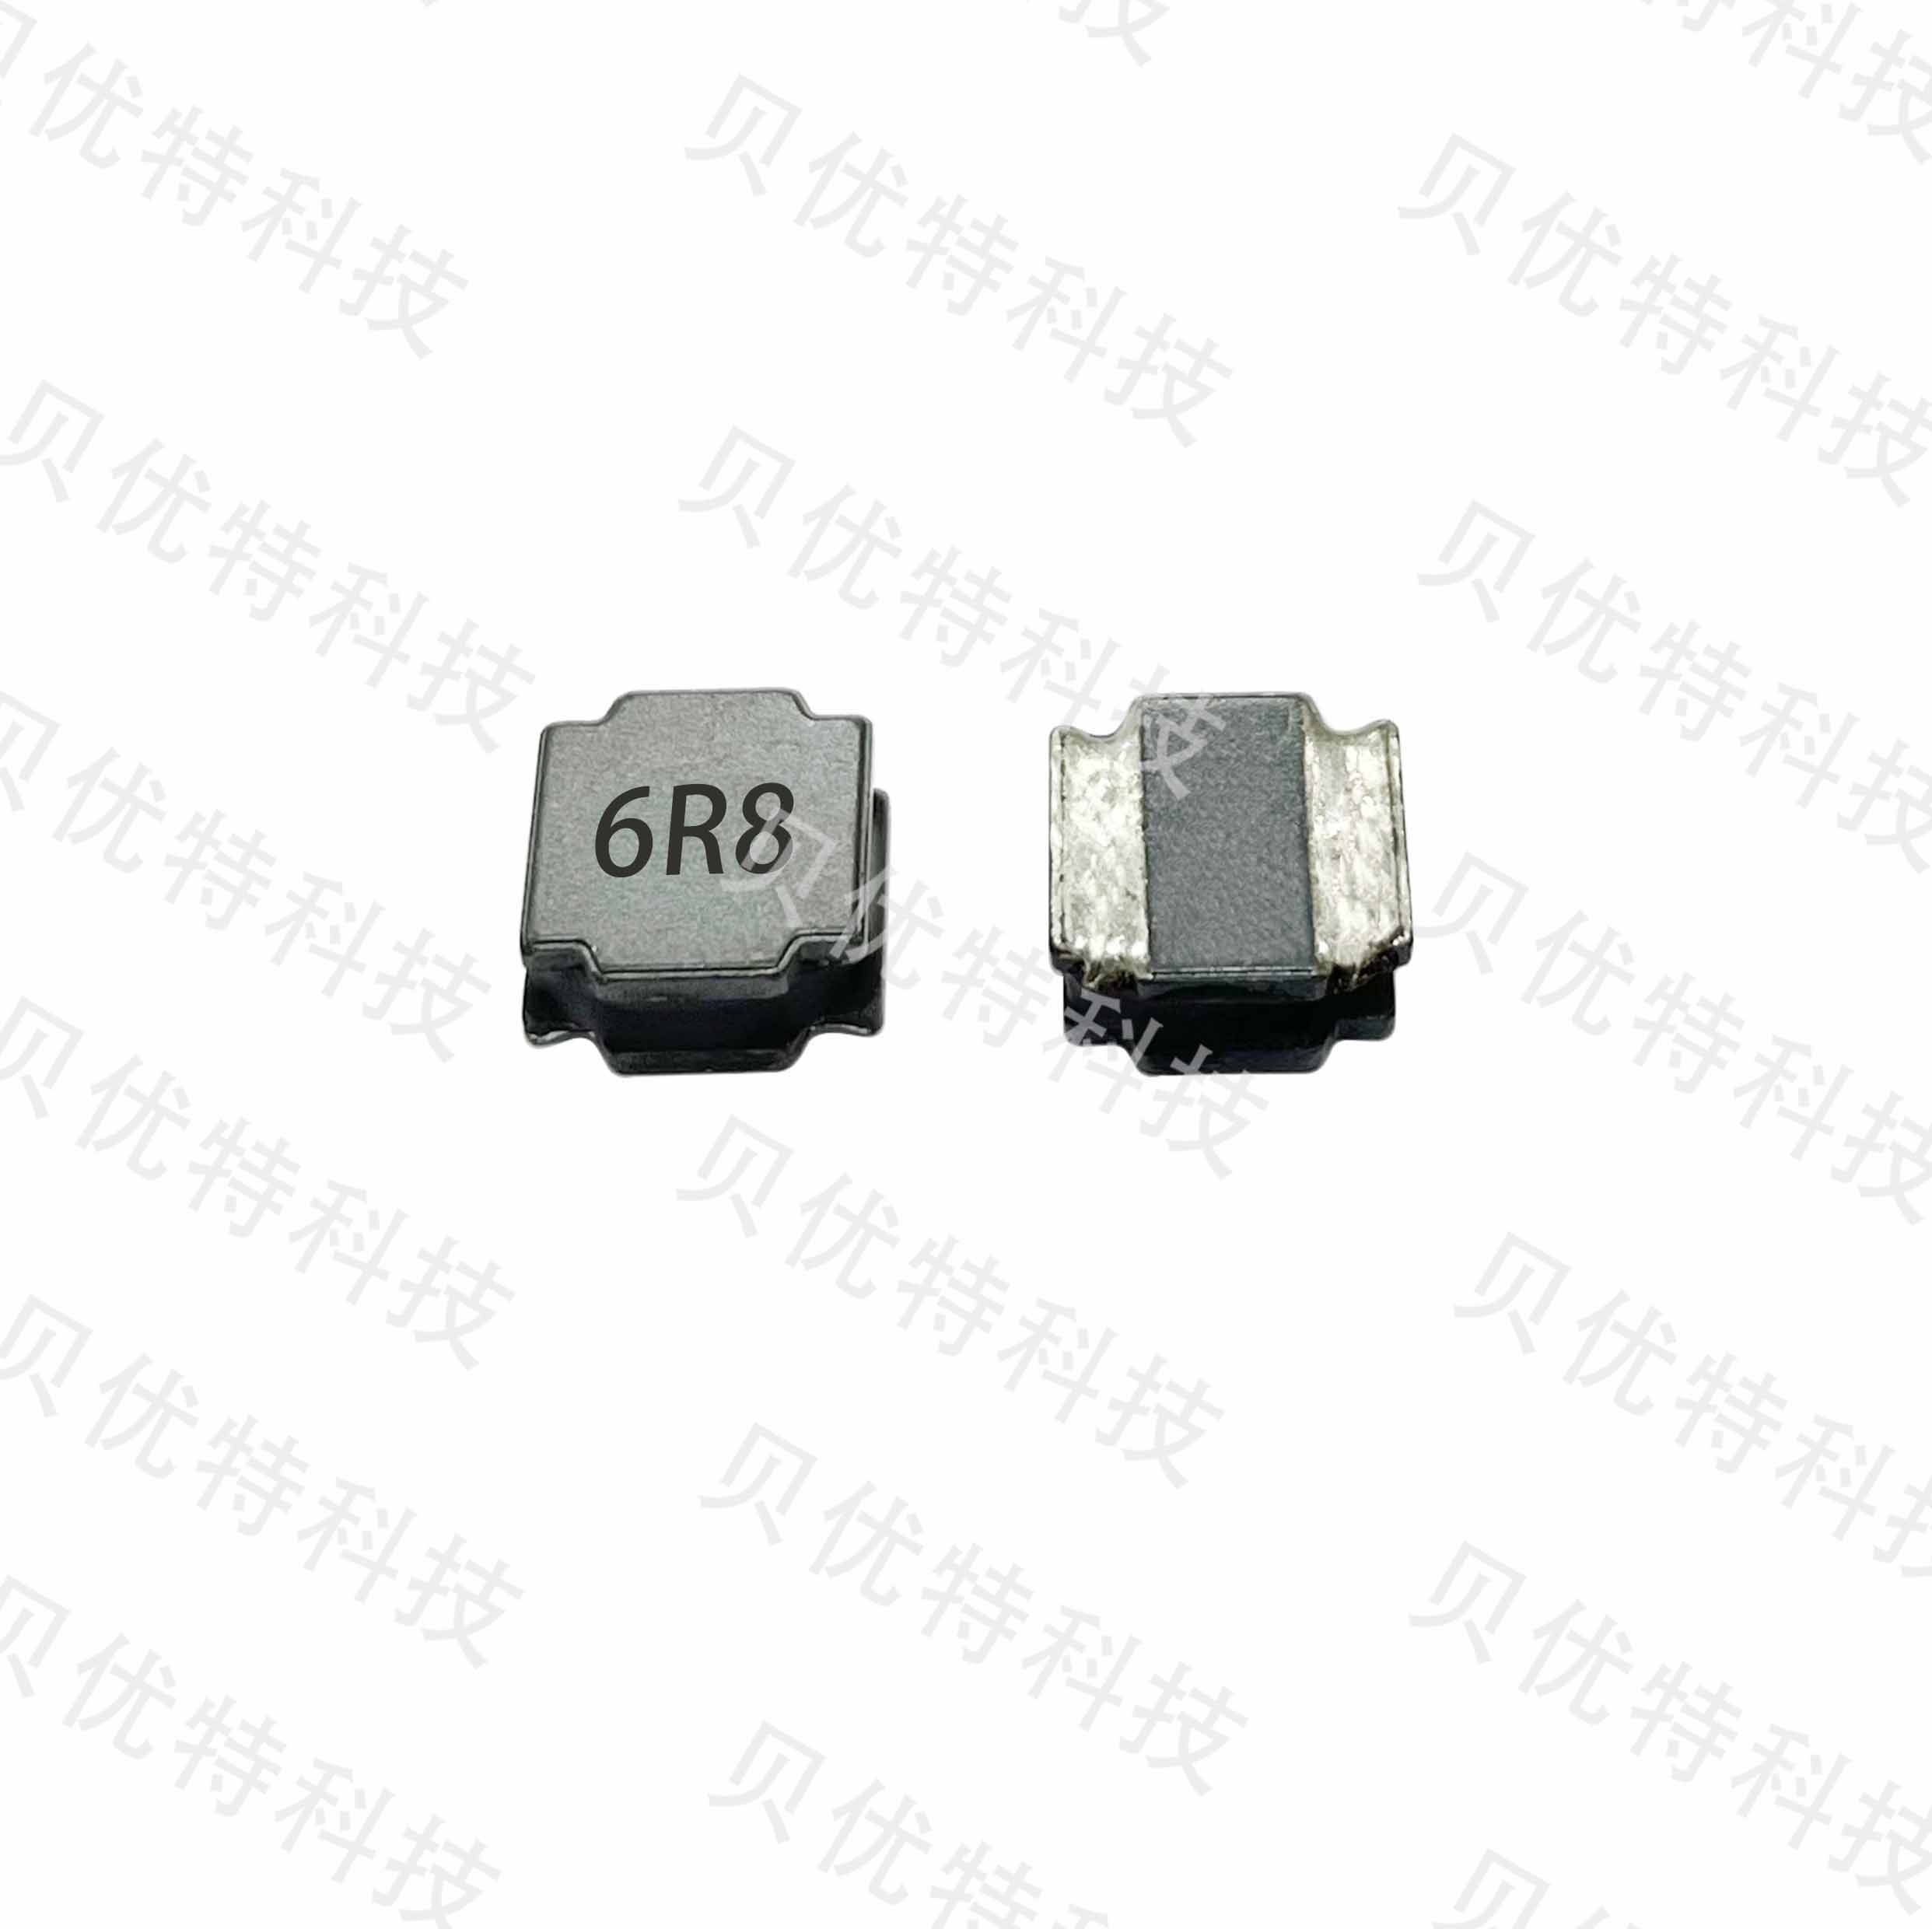  磁胶电感BTNR6045C-R82N-R封胶电感 贴片电感 